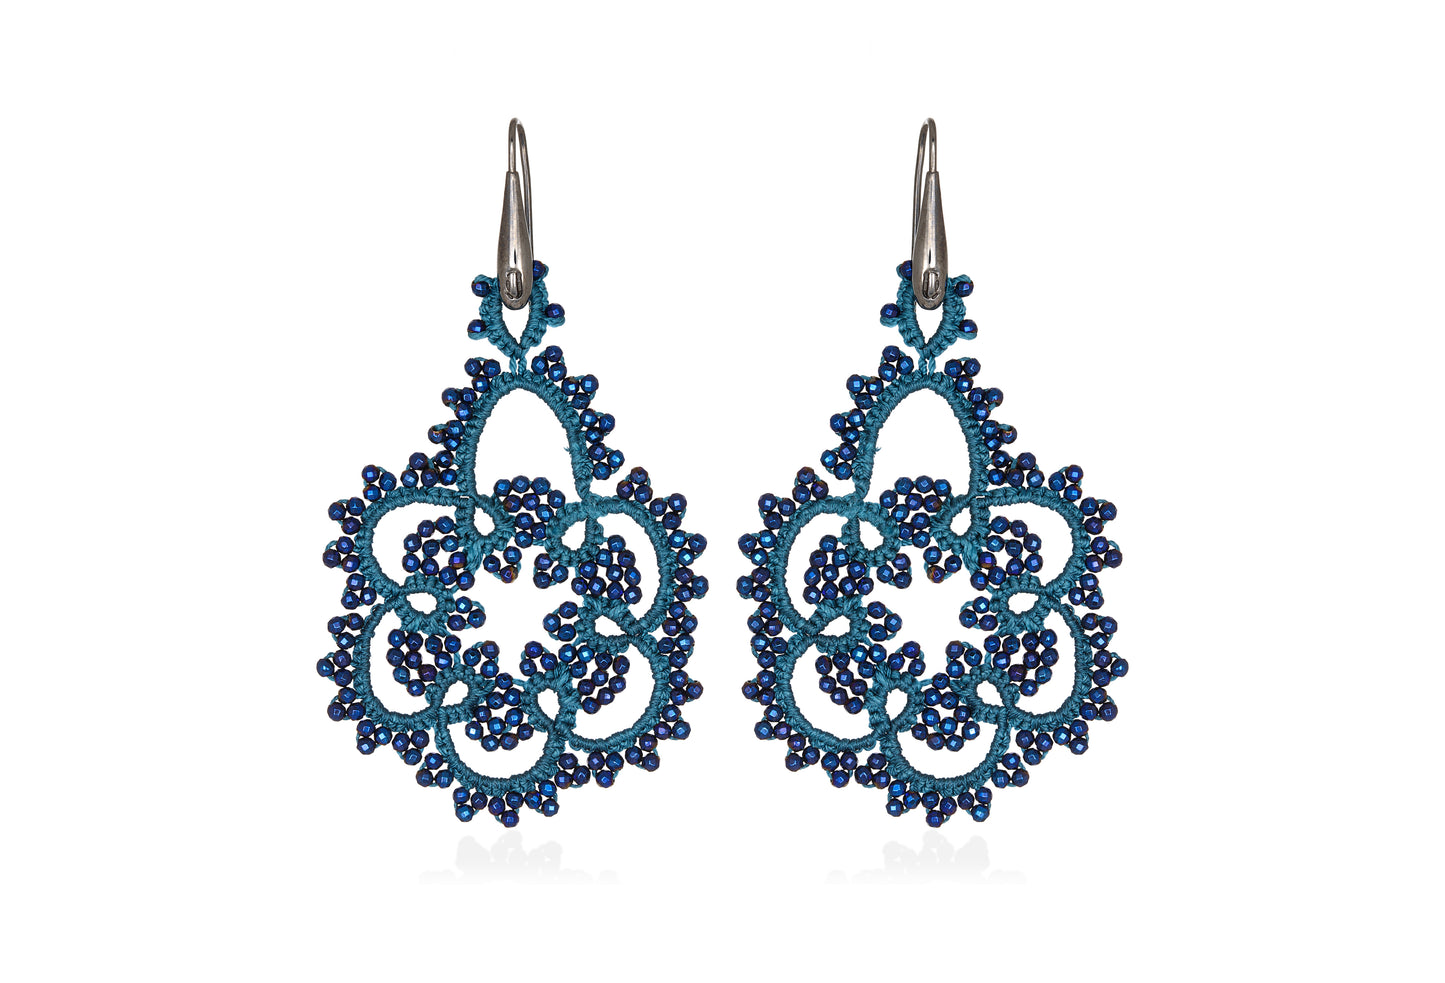 Vintage Flower lace earrings, blue